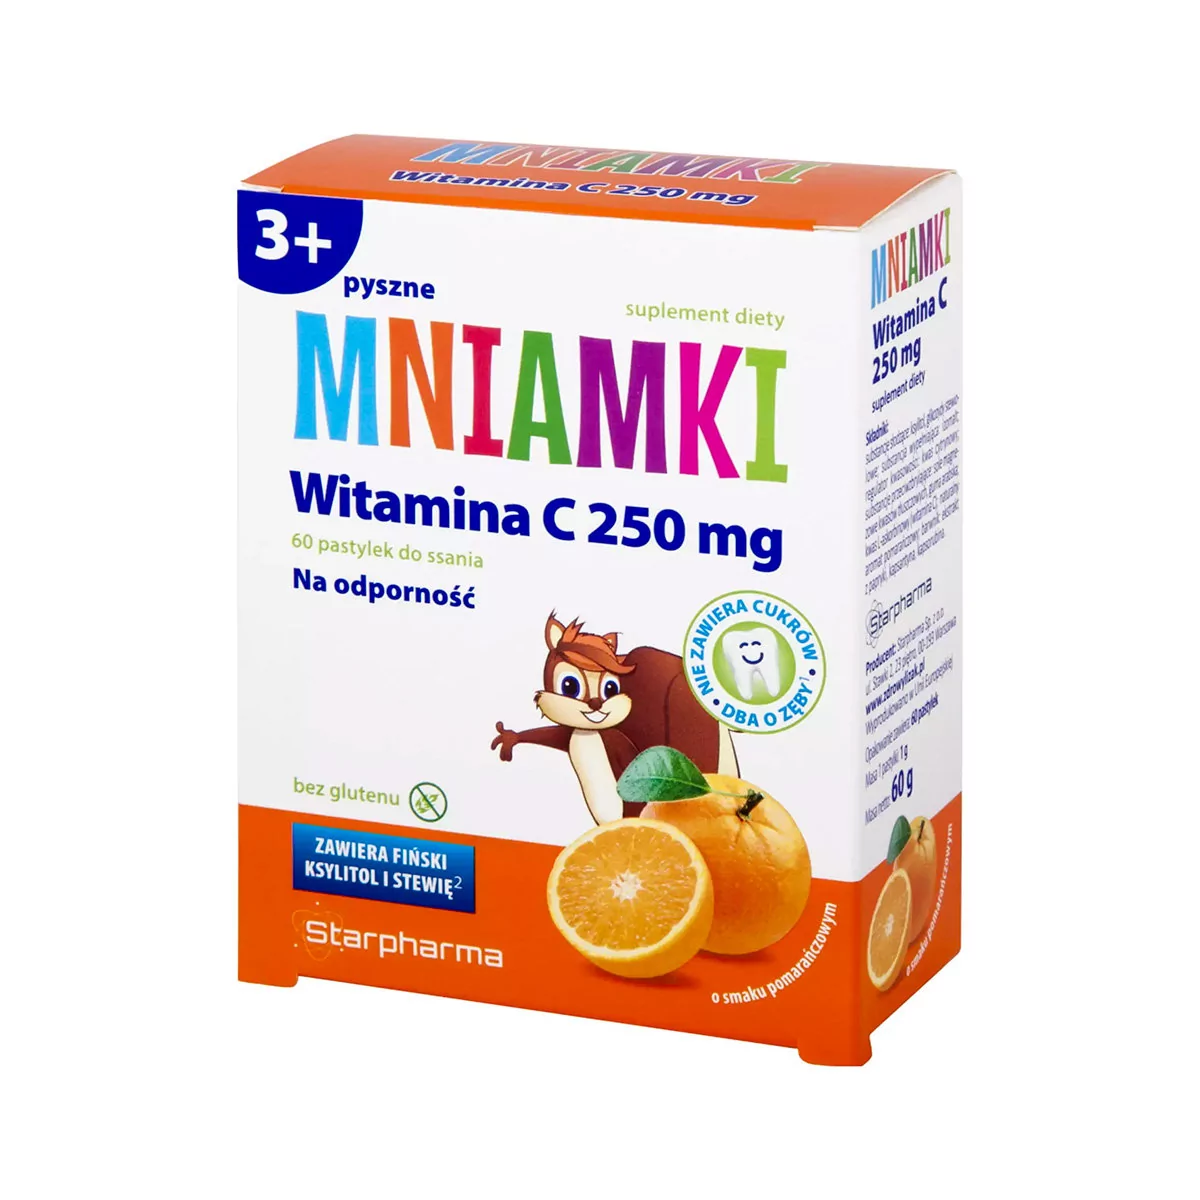 Starpharma Mniamki Witamina C 250 mg x 60 pastylek do ssania